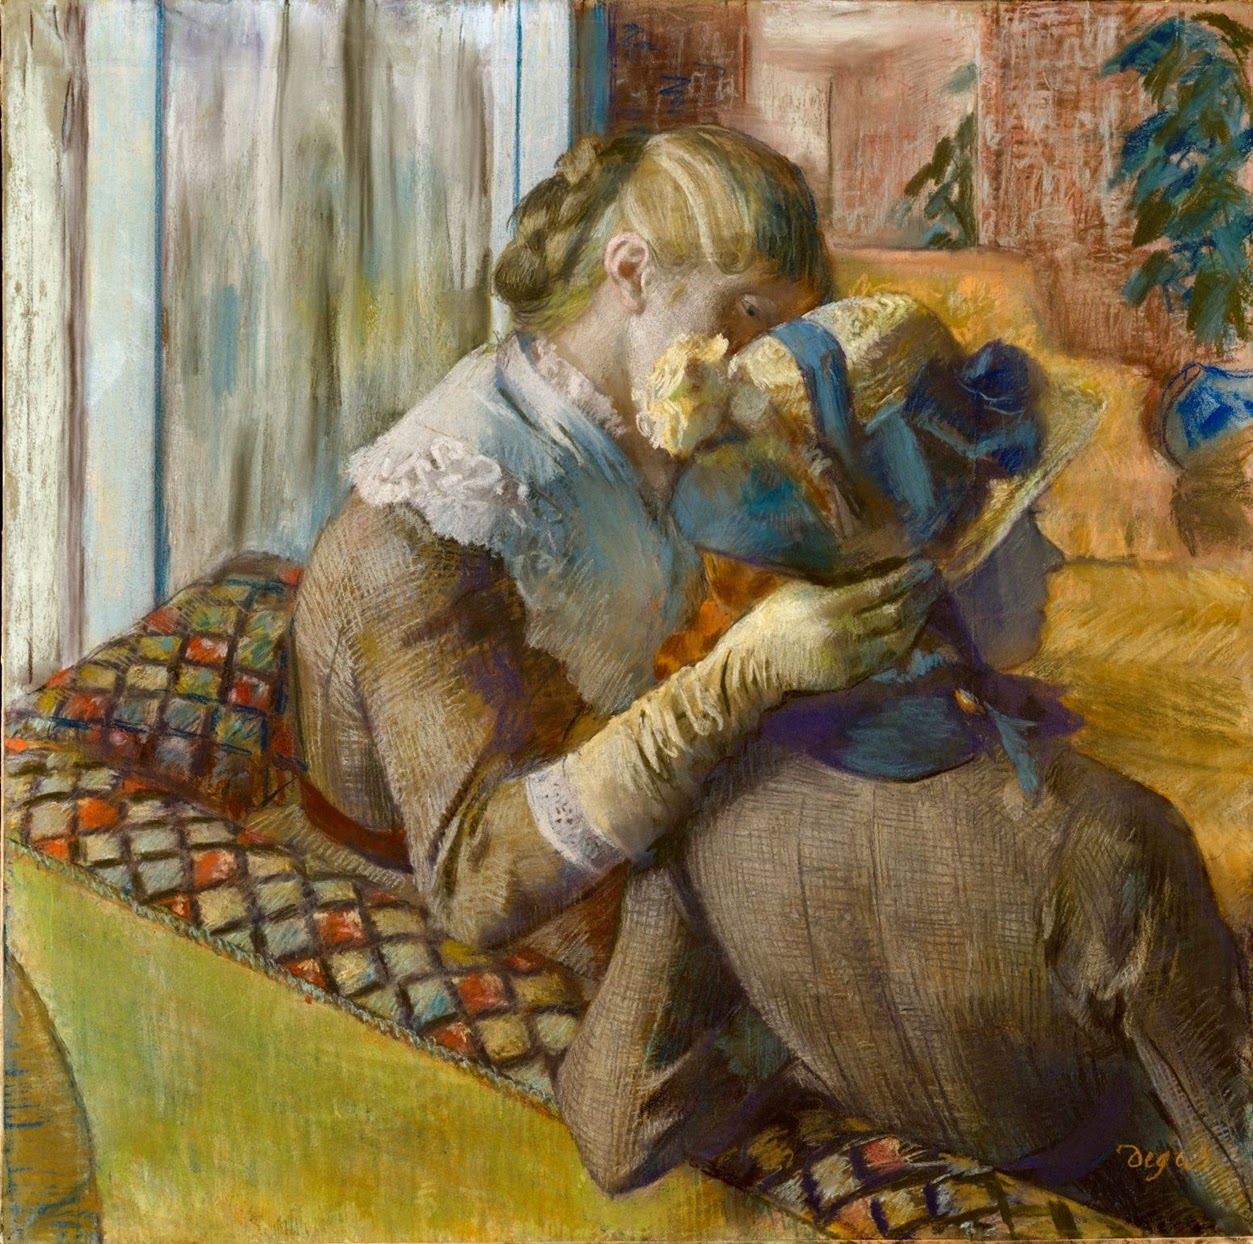 Edgar+Degas-1834-1917 (58).jpg